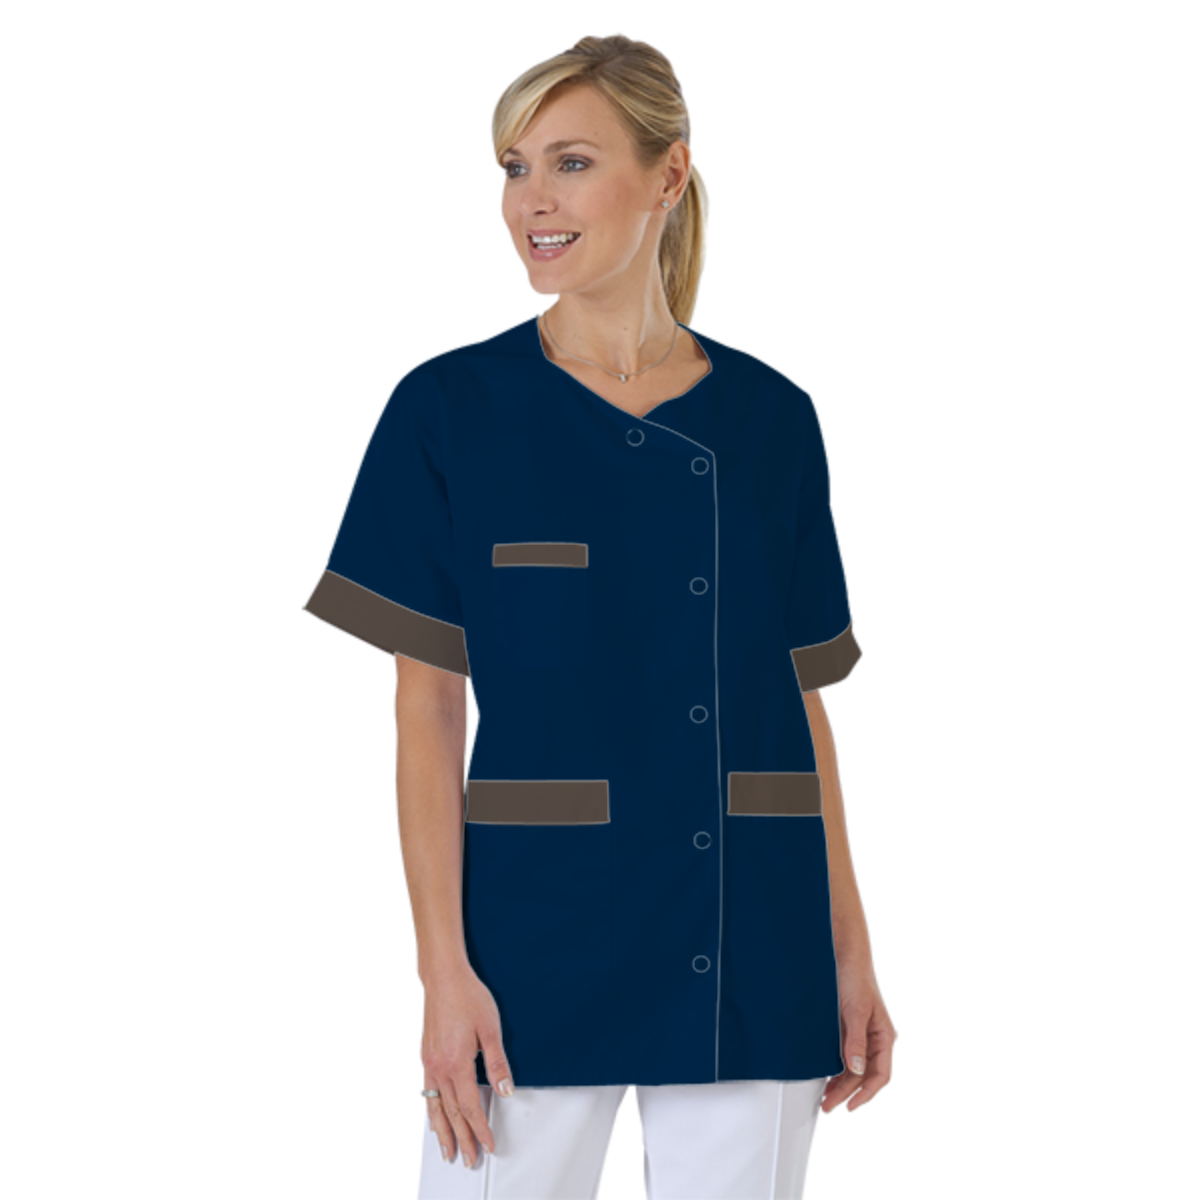 blouse-infirmiere-personnalise-col-trapeze acheté - par Emeline - le 04-07-2020